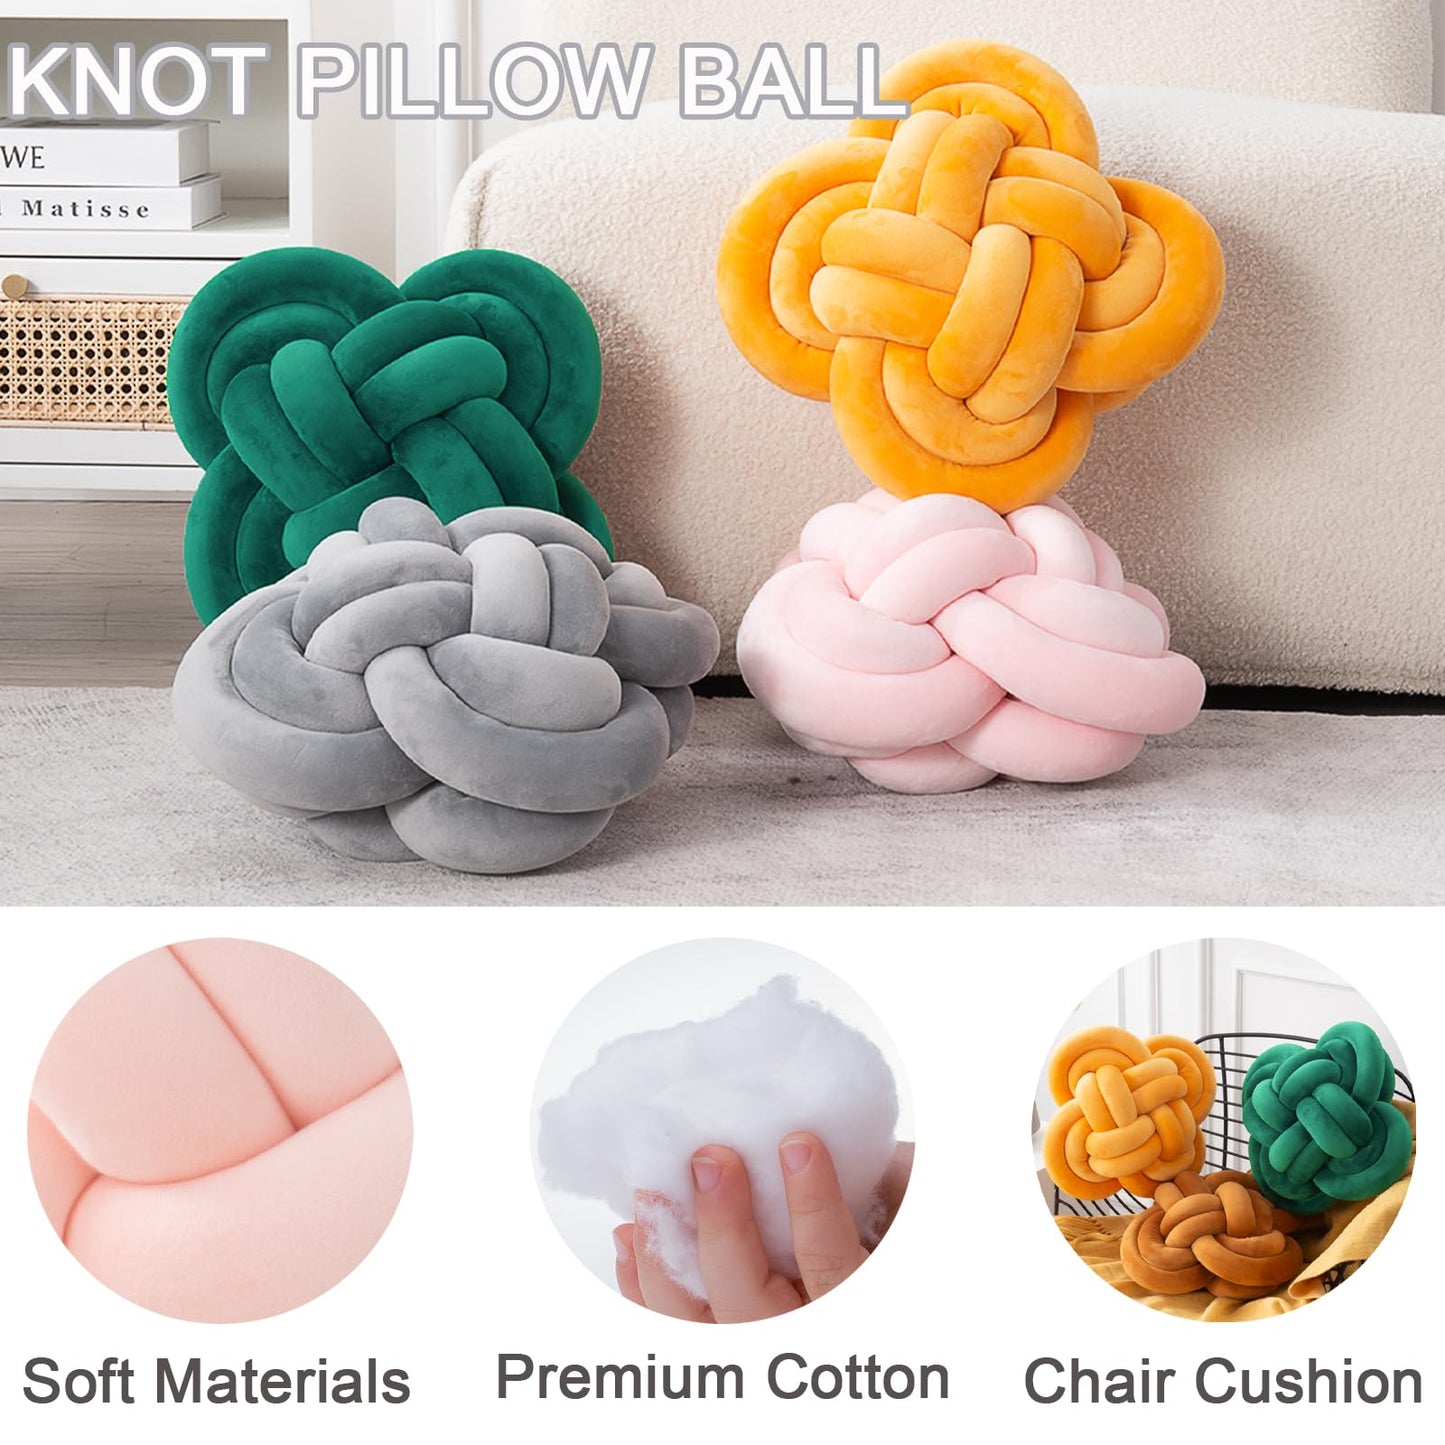 Graphite Knot Pillow - Modern Knot Pillow - Knot Ball Pillow Cushion Modern Throw Pillow